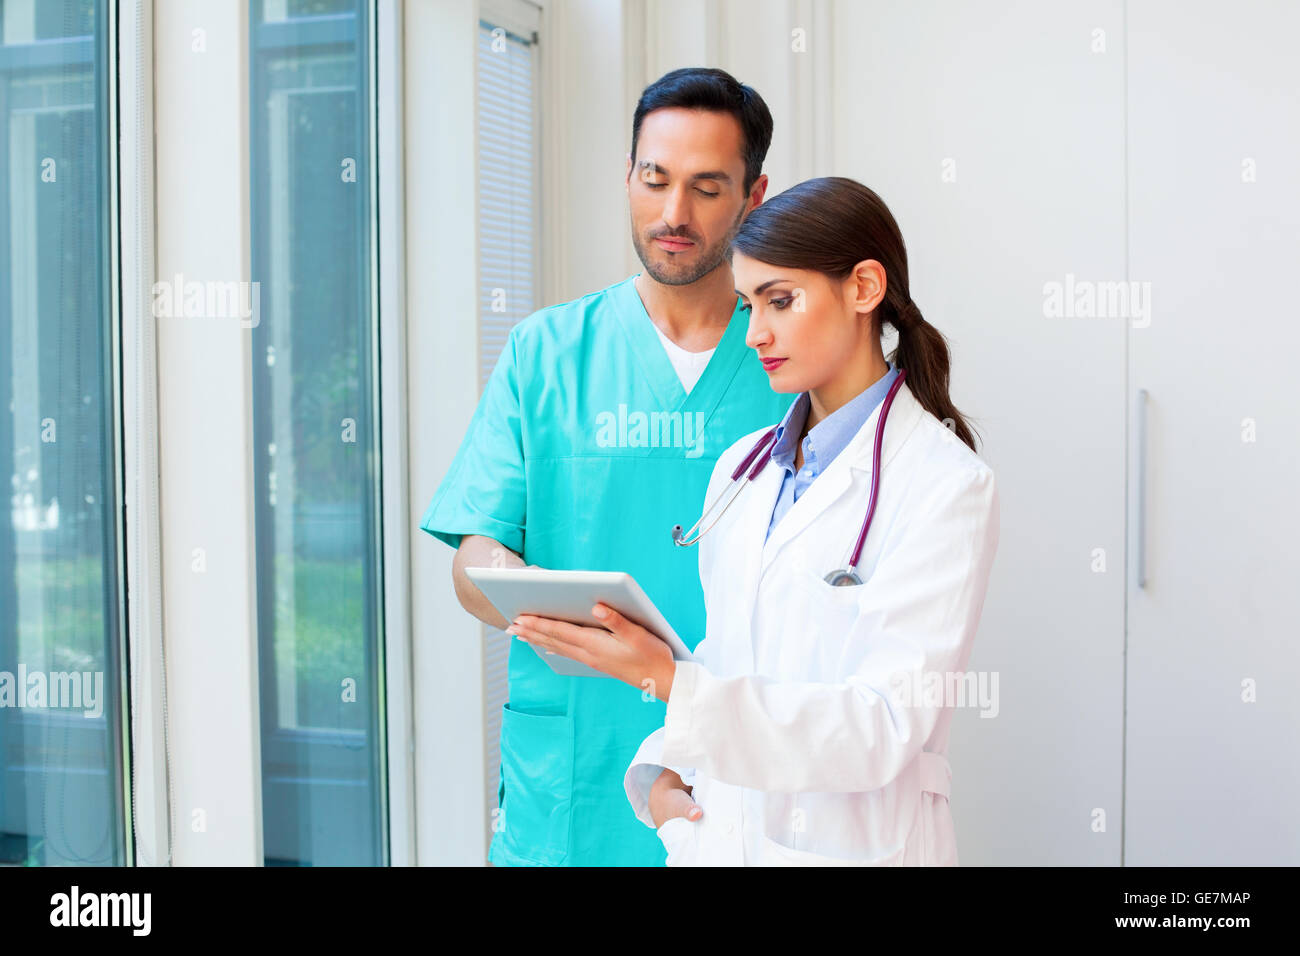 Ein Foto des jungen Ärzteteam mit digital-Tablette. Mediziner sind in Uniformen. Sie stehen im Krankenhaus. Stockfoto